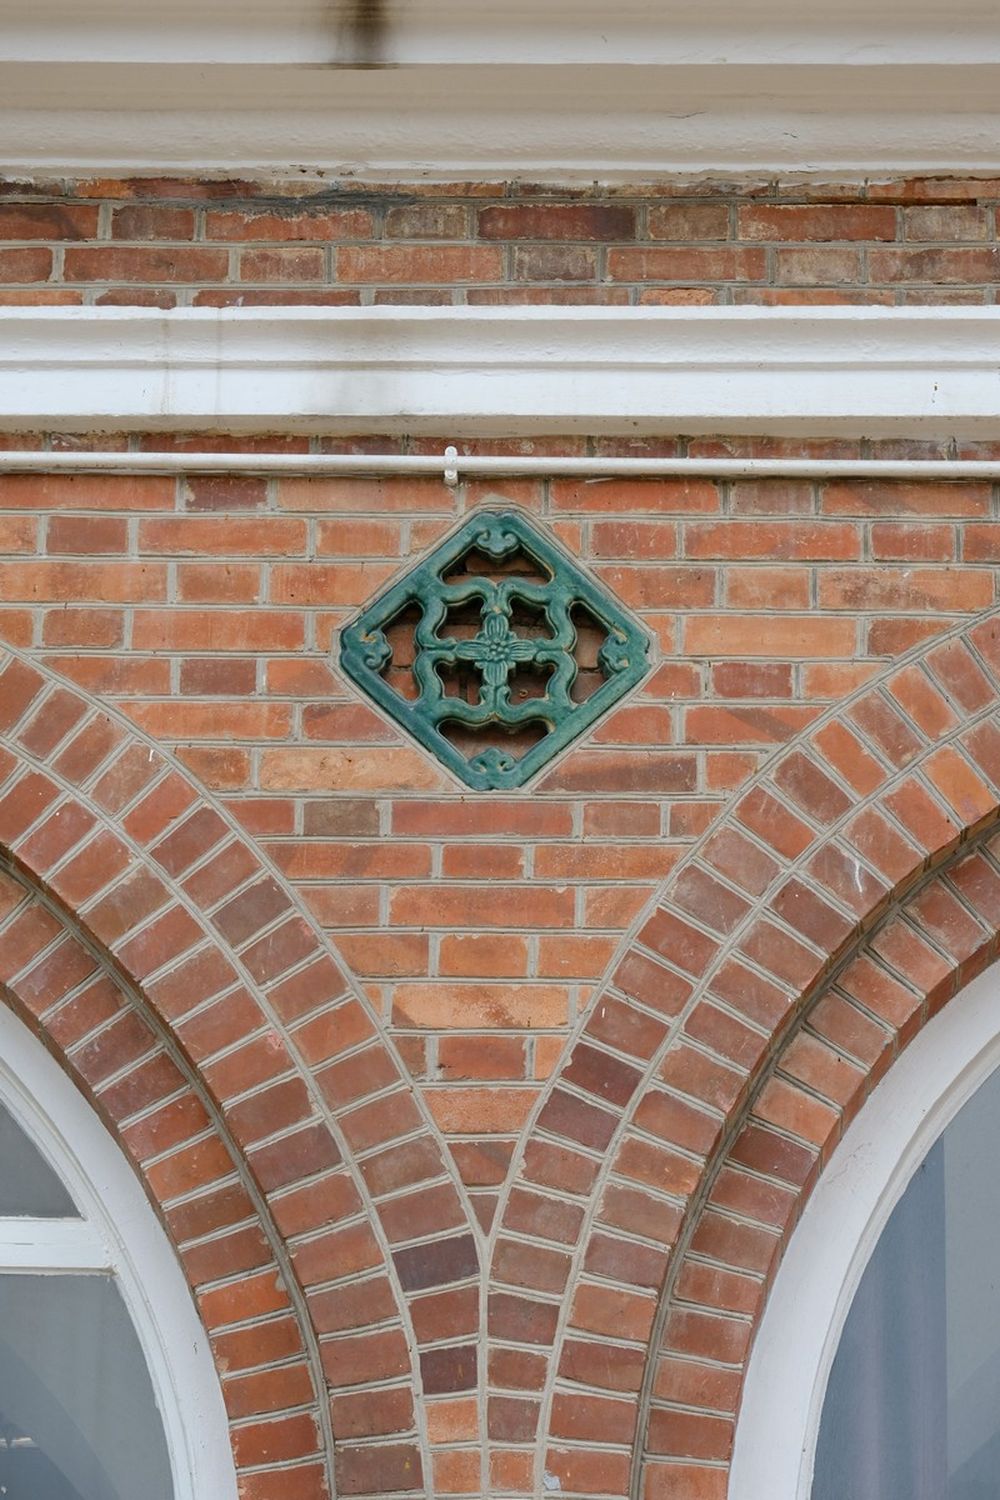 梅堂和儀禮堂的紅磚牆身有中式陶製漏窗，是較罕有的裝飾風格。